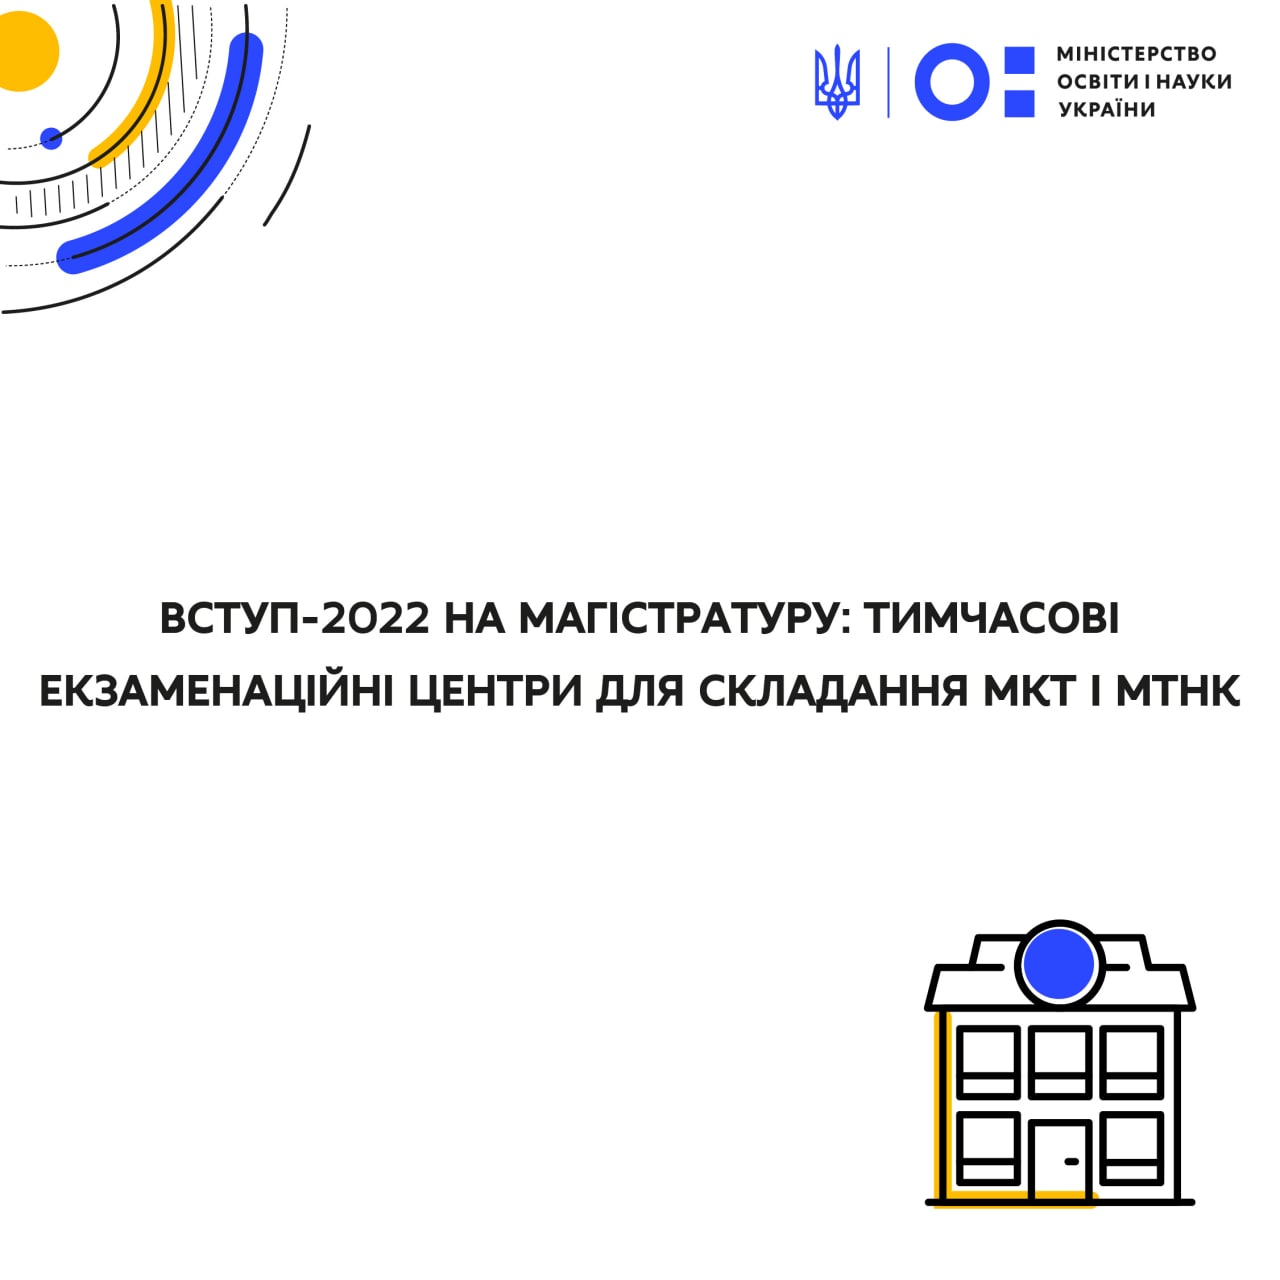 Вступ-2022 на магістратуру: тимчасові екзаменаційні центри для складання МКТ і МТНК